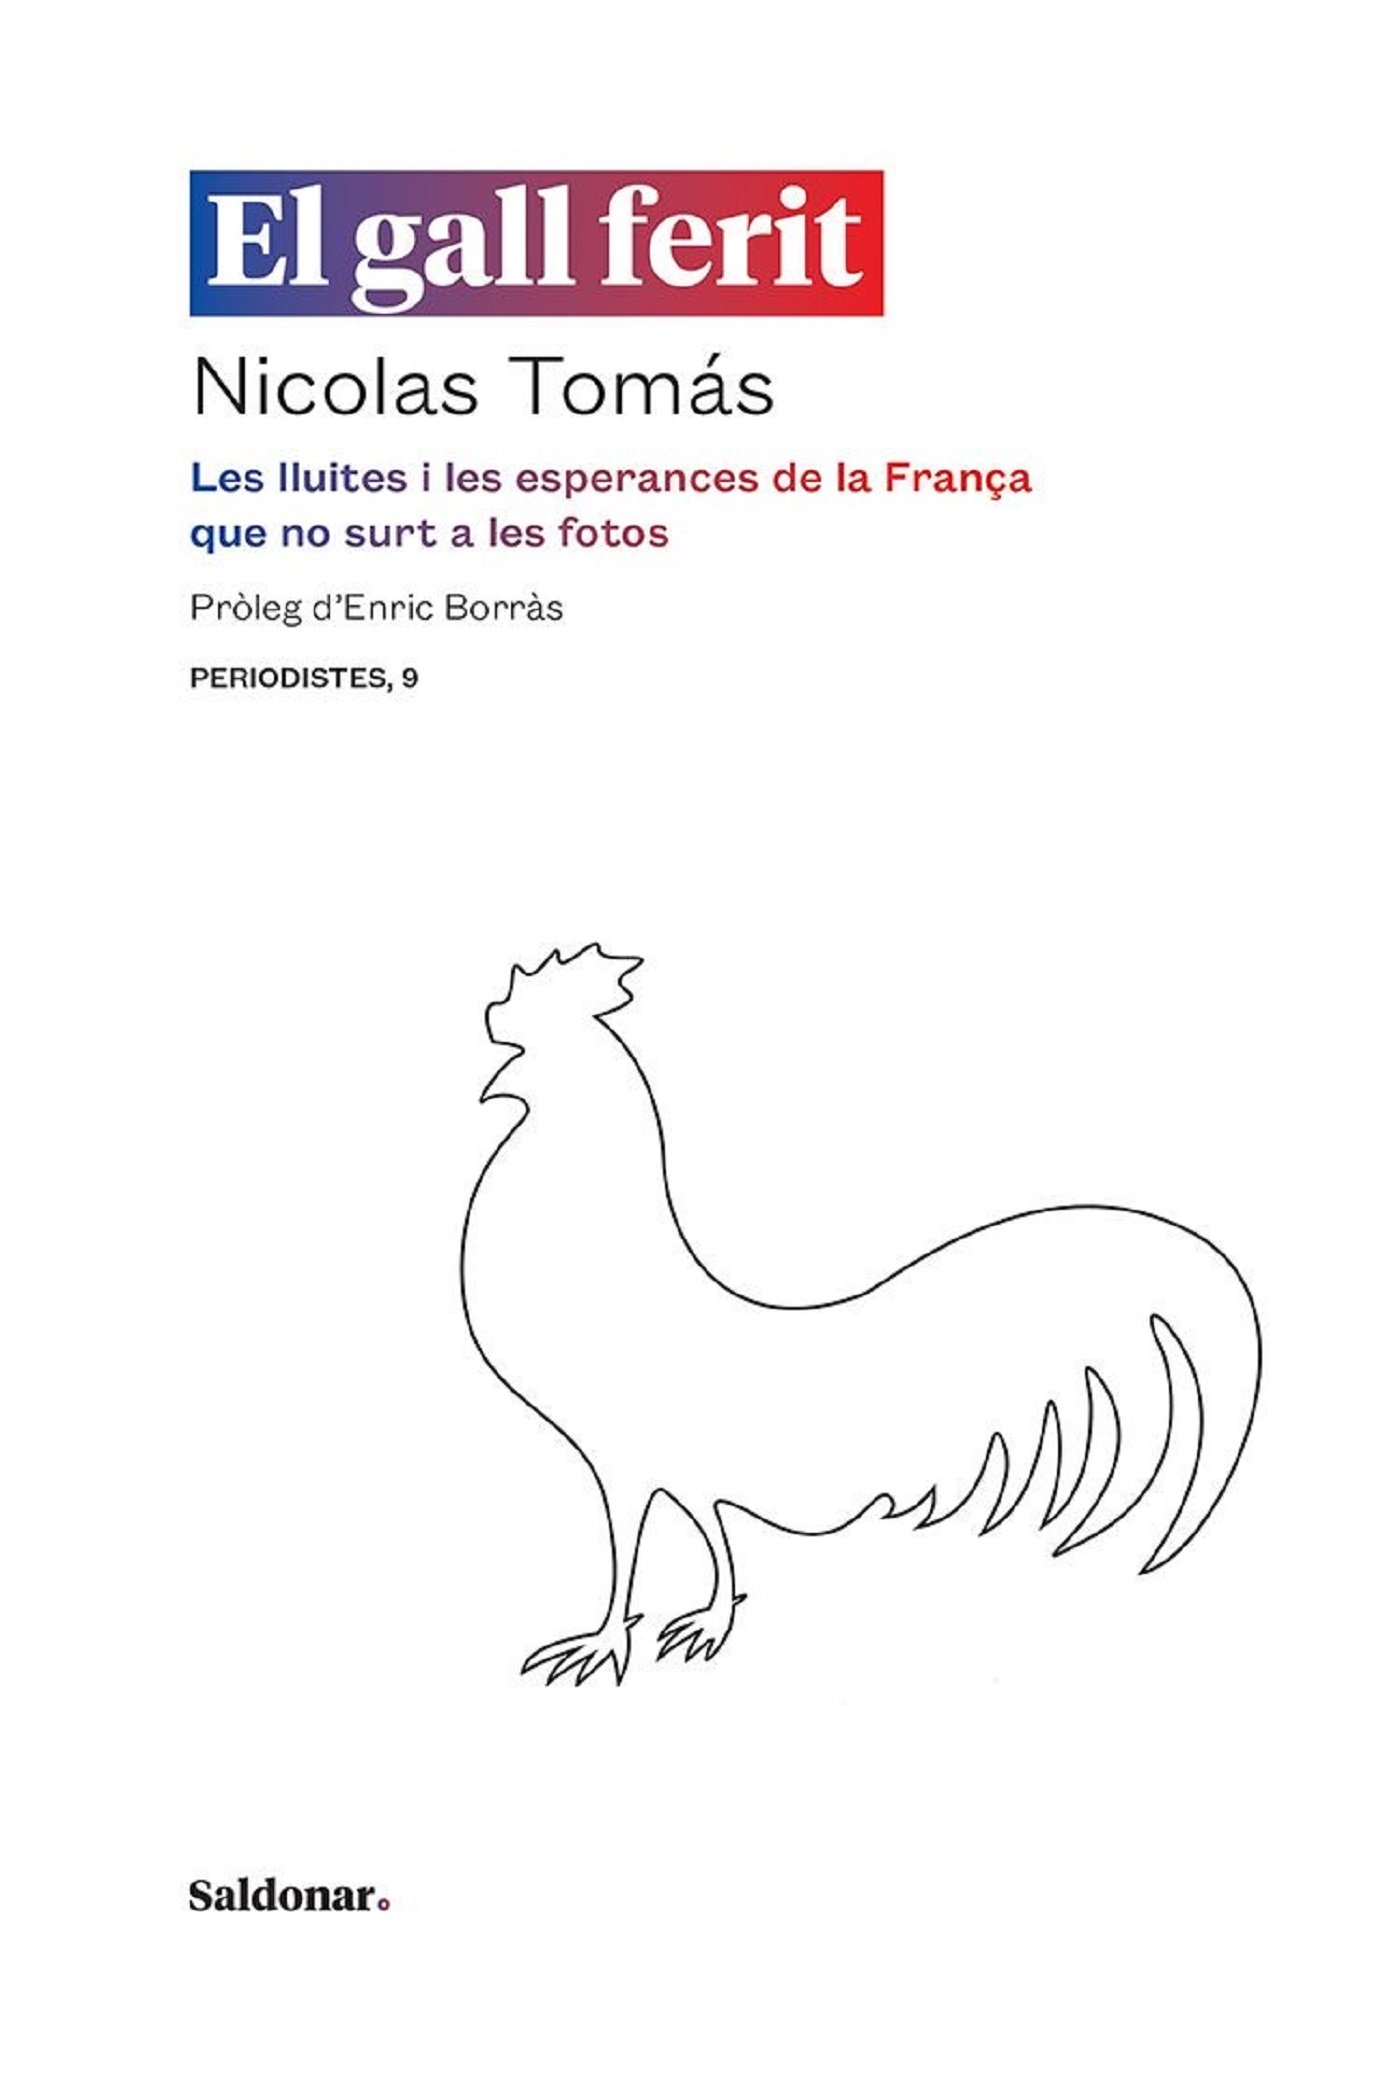 Avance editorial: 'El gall ferit', de Nicolas Tomás